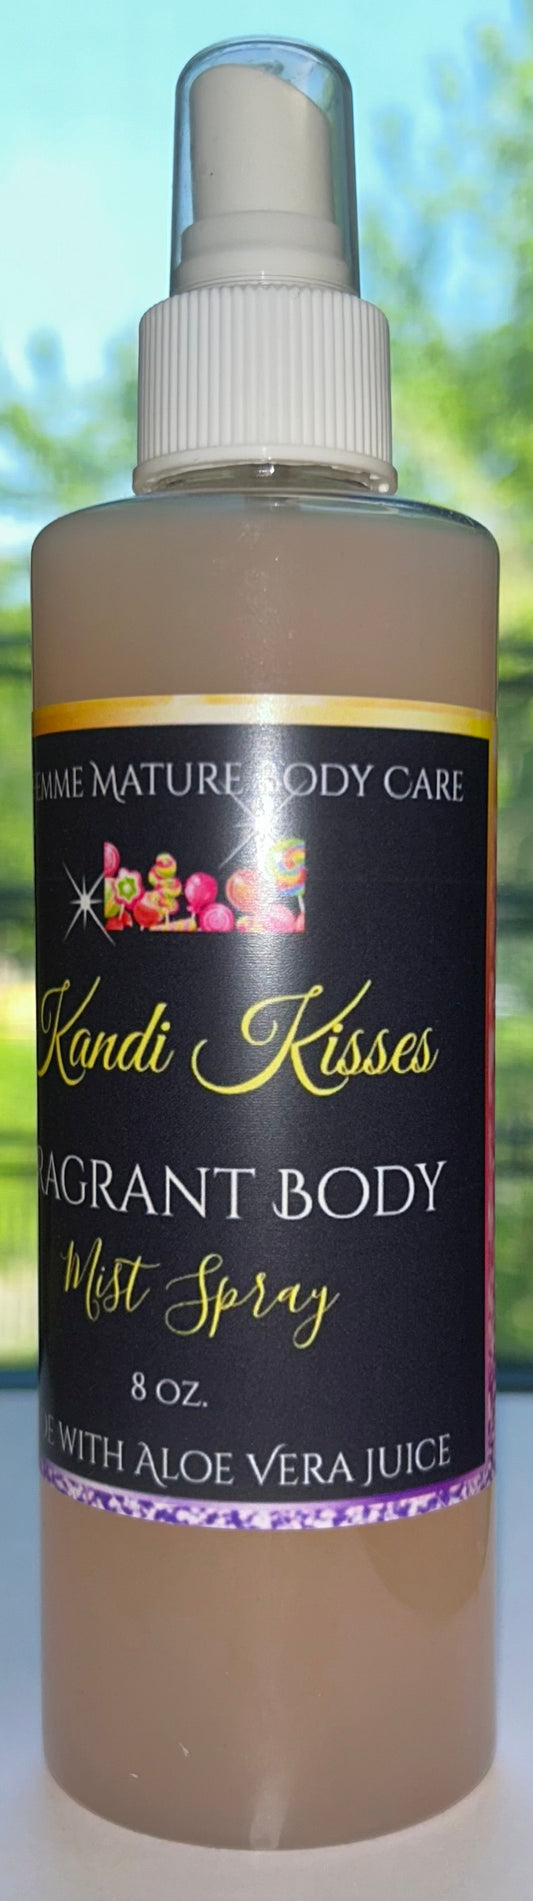 Kandi Kisses Fragrant Body Mist Spray